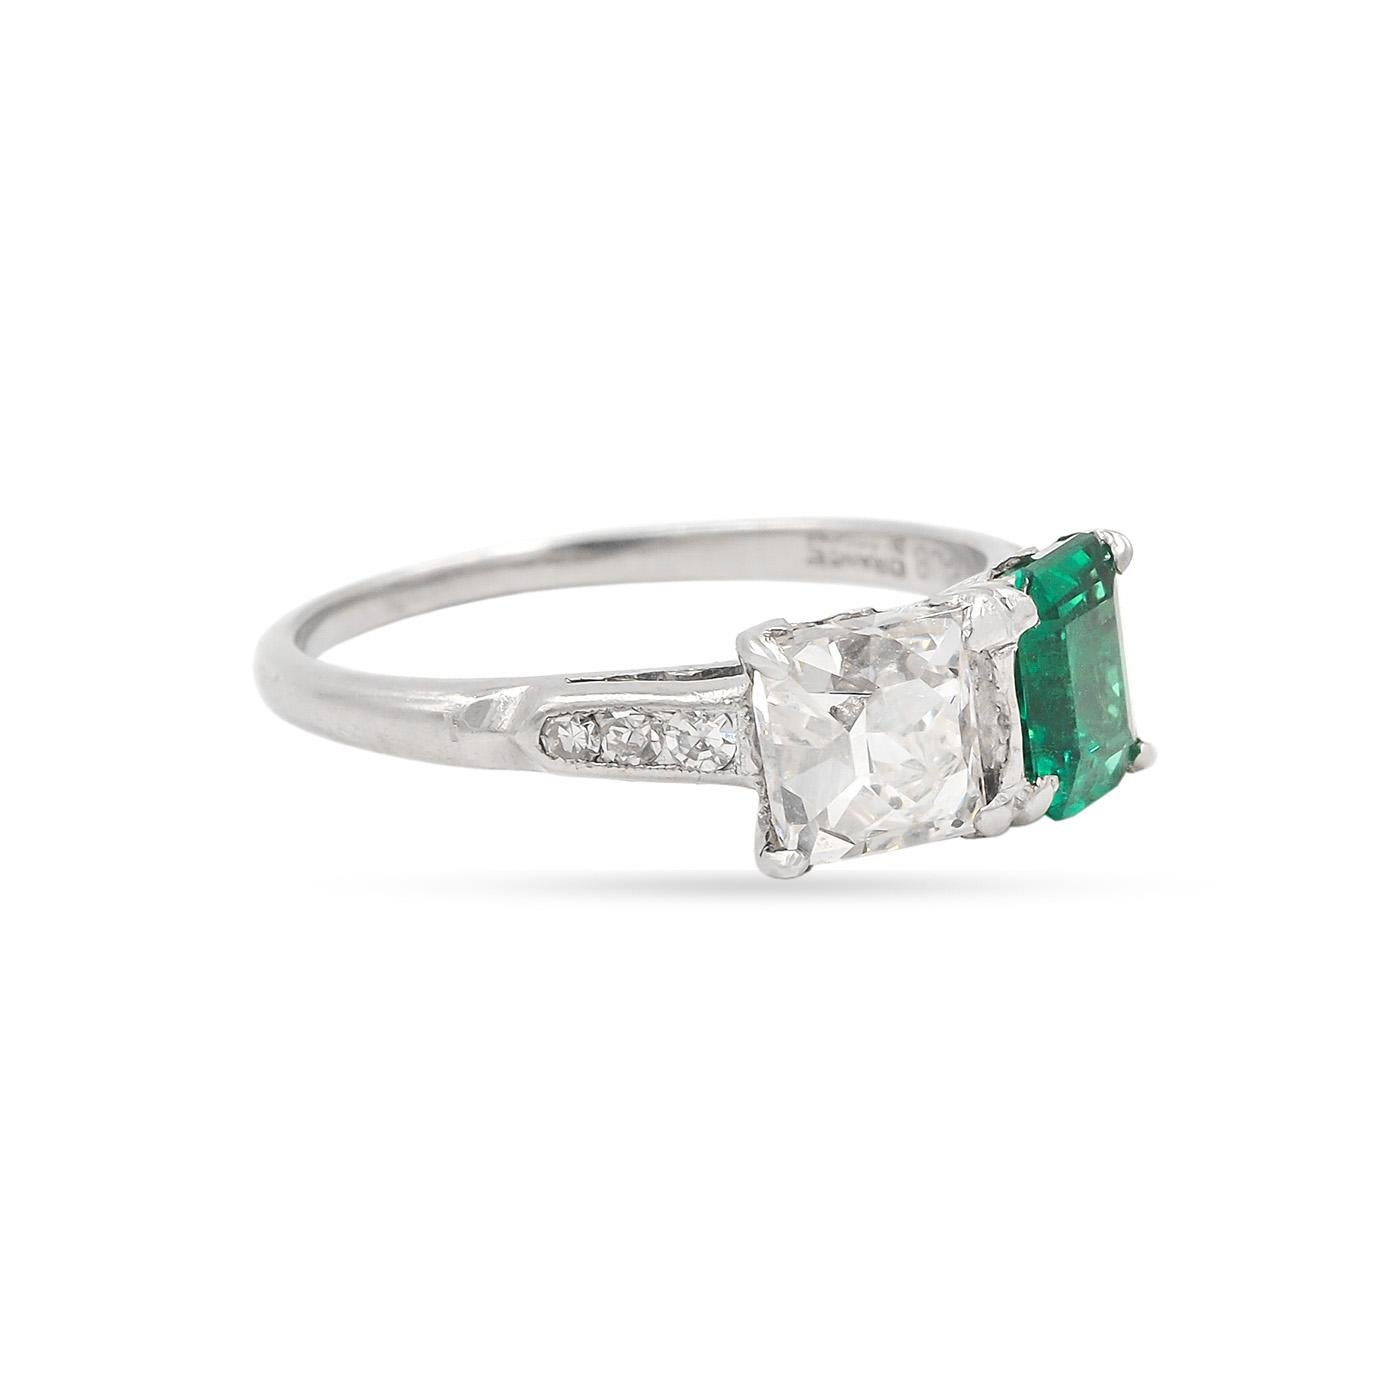 Original Art Deco Ära Französisch Cut Diamant & Smaragd Toi et Moi Verlobungsring aus Platin. Der French Cut-Diamant hat 1,51 Karat und ist von GIA mit der Farbe H und der Reinheit SI2 zertifiziert. Der AGL-zertifizierte natürliche kolumbianische